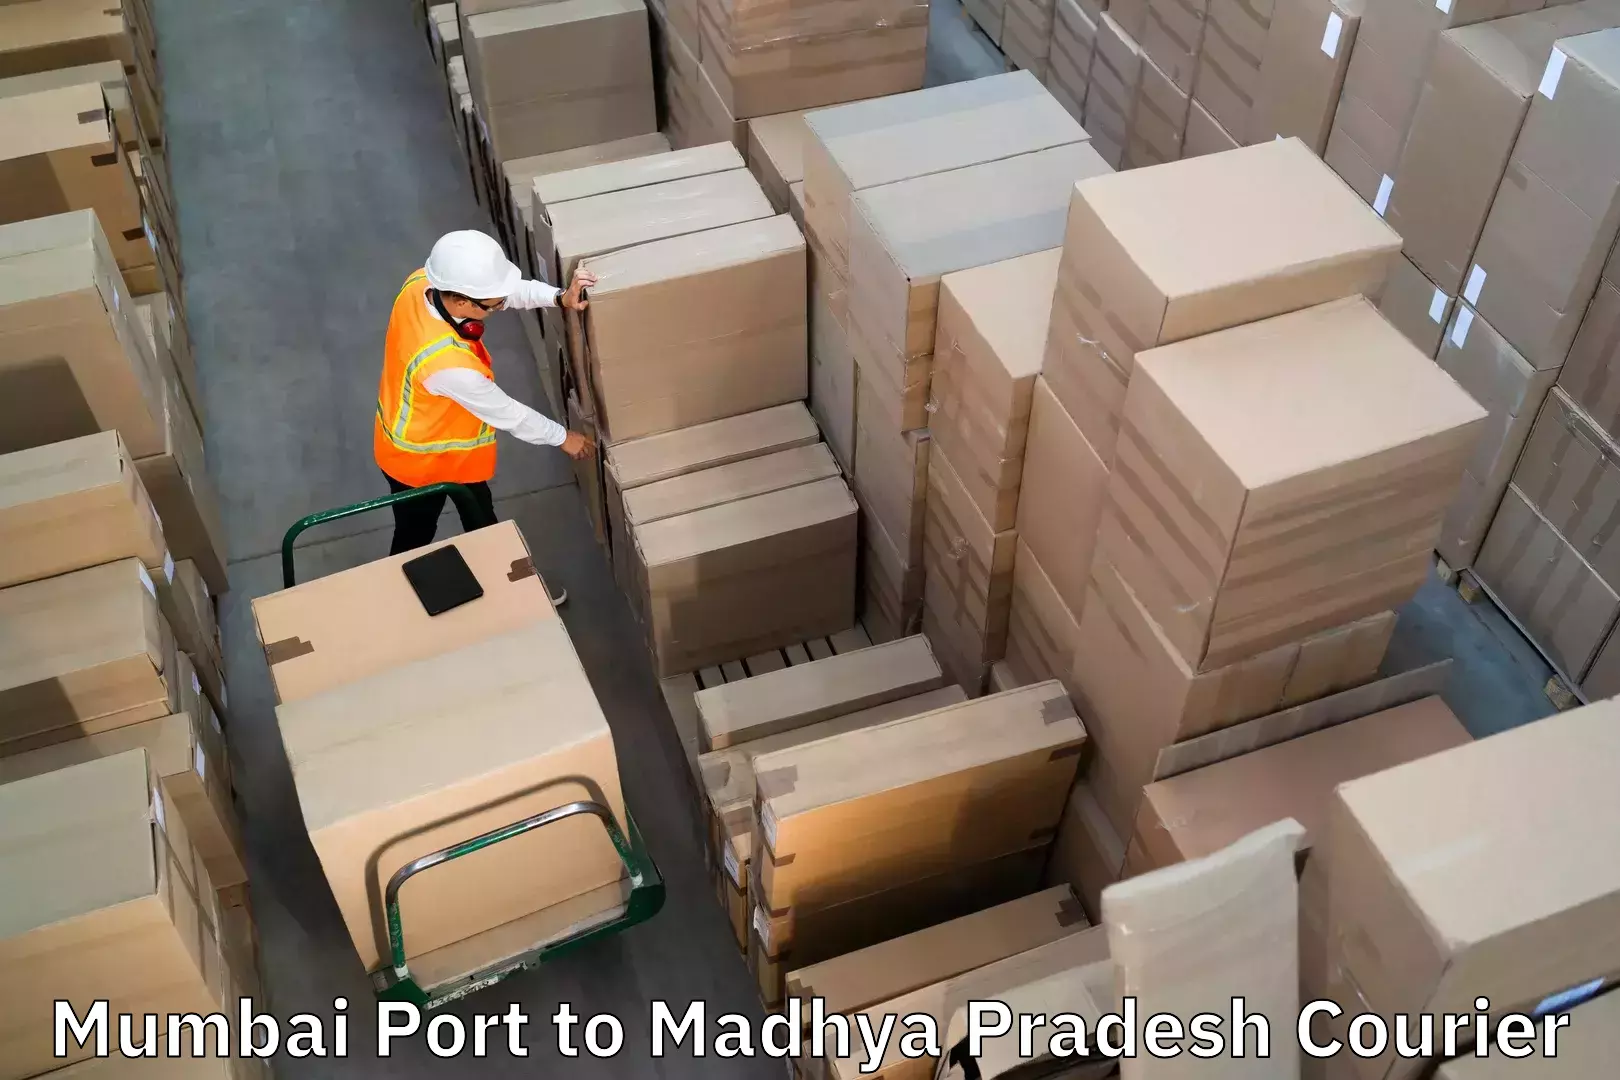 Baggage shipping service Mumbai Port to Raghogarh